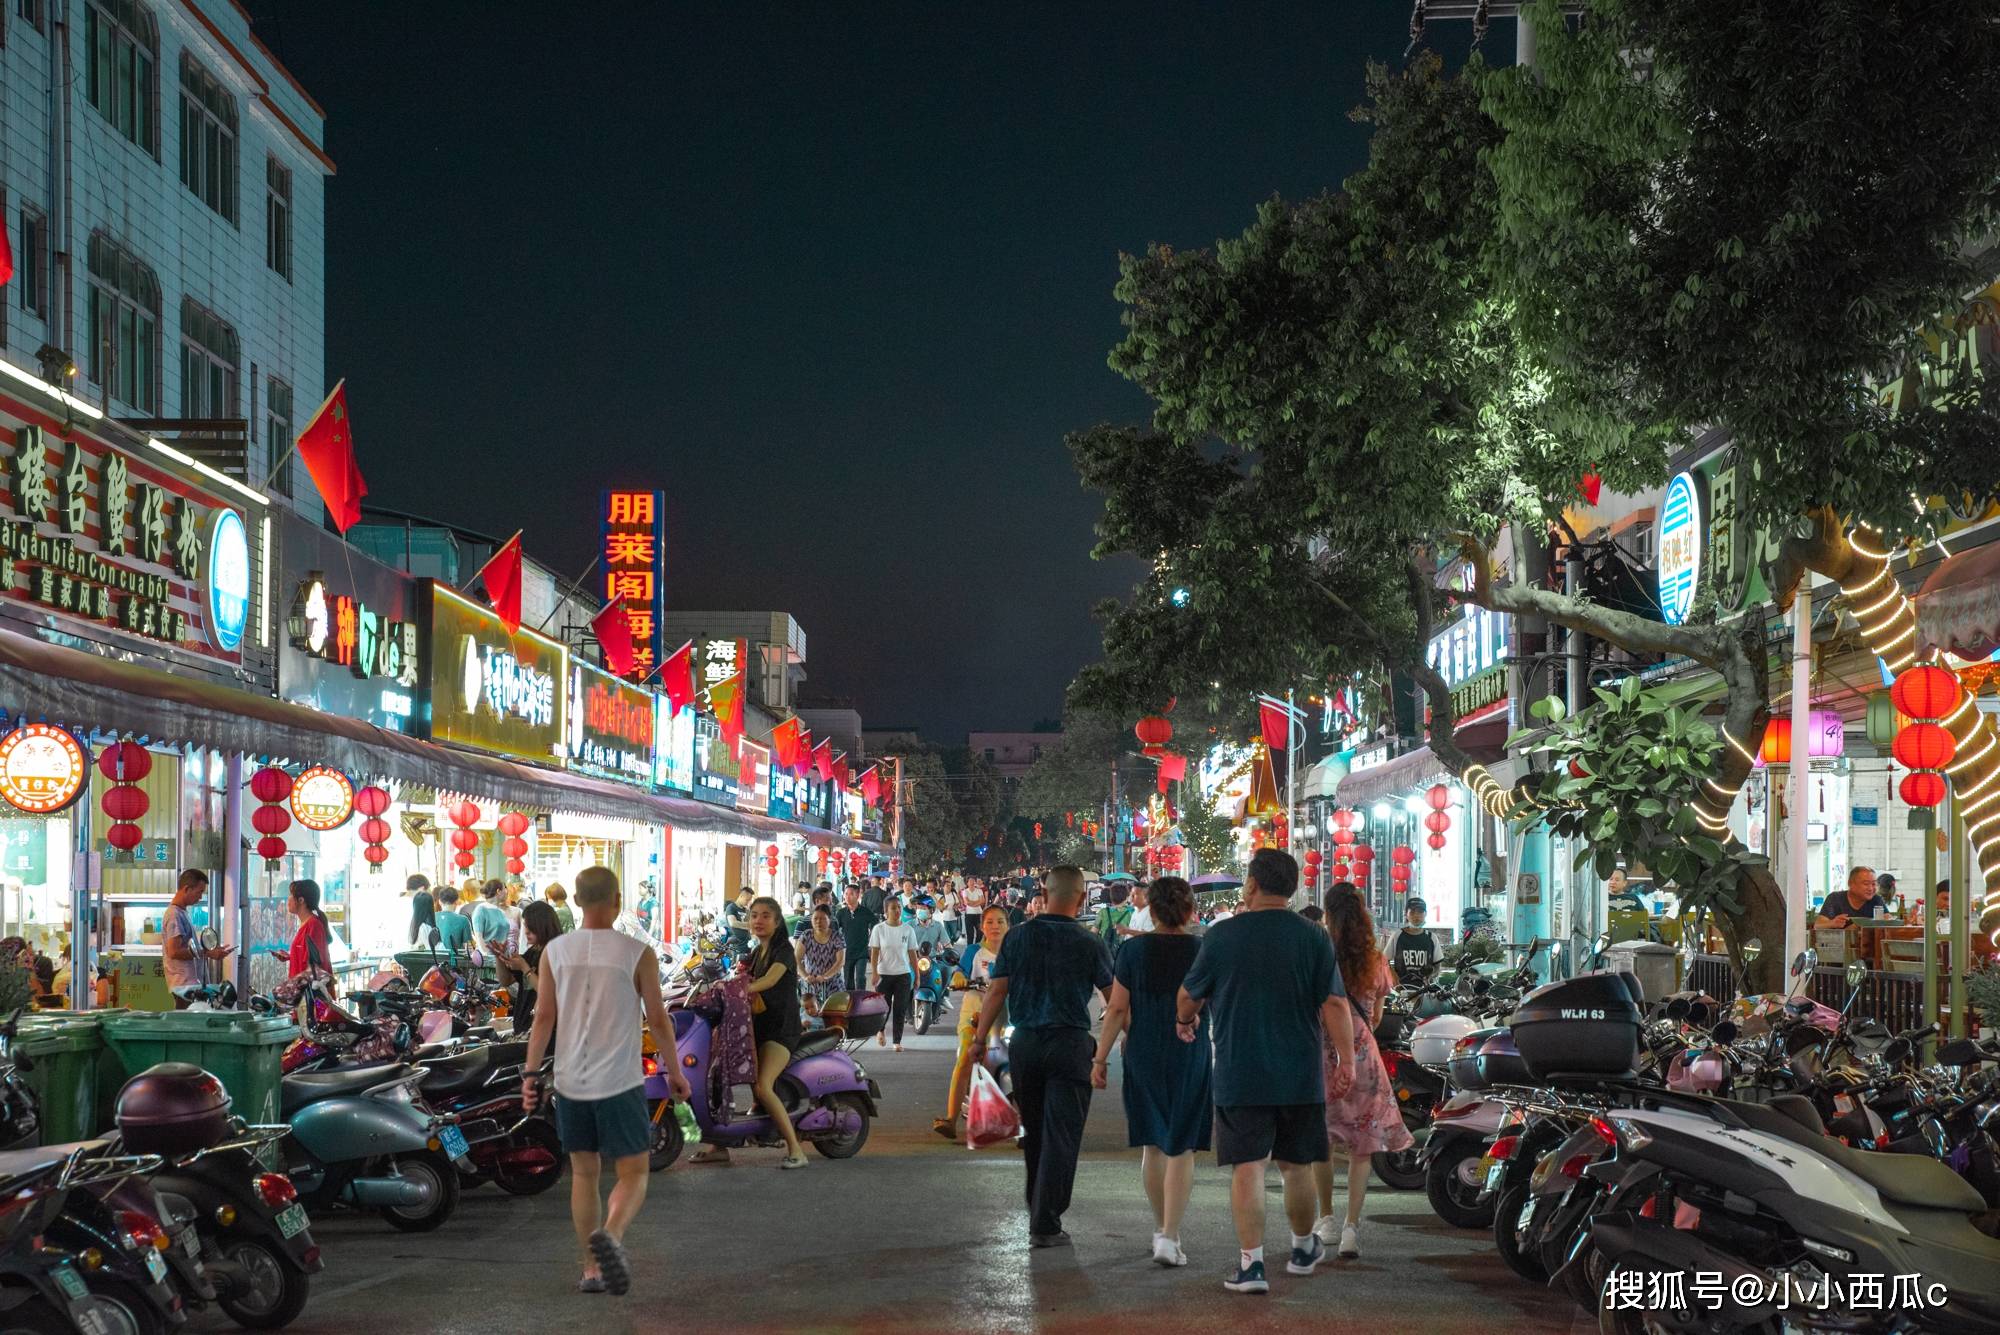 越南胡志明市夜景图片高清原图下载,越南胡志明市夜景图片,图片 - IOS桌面